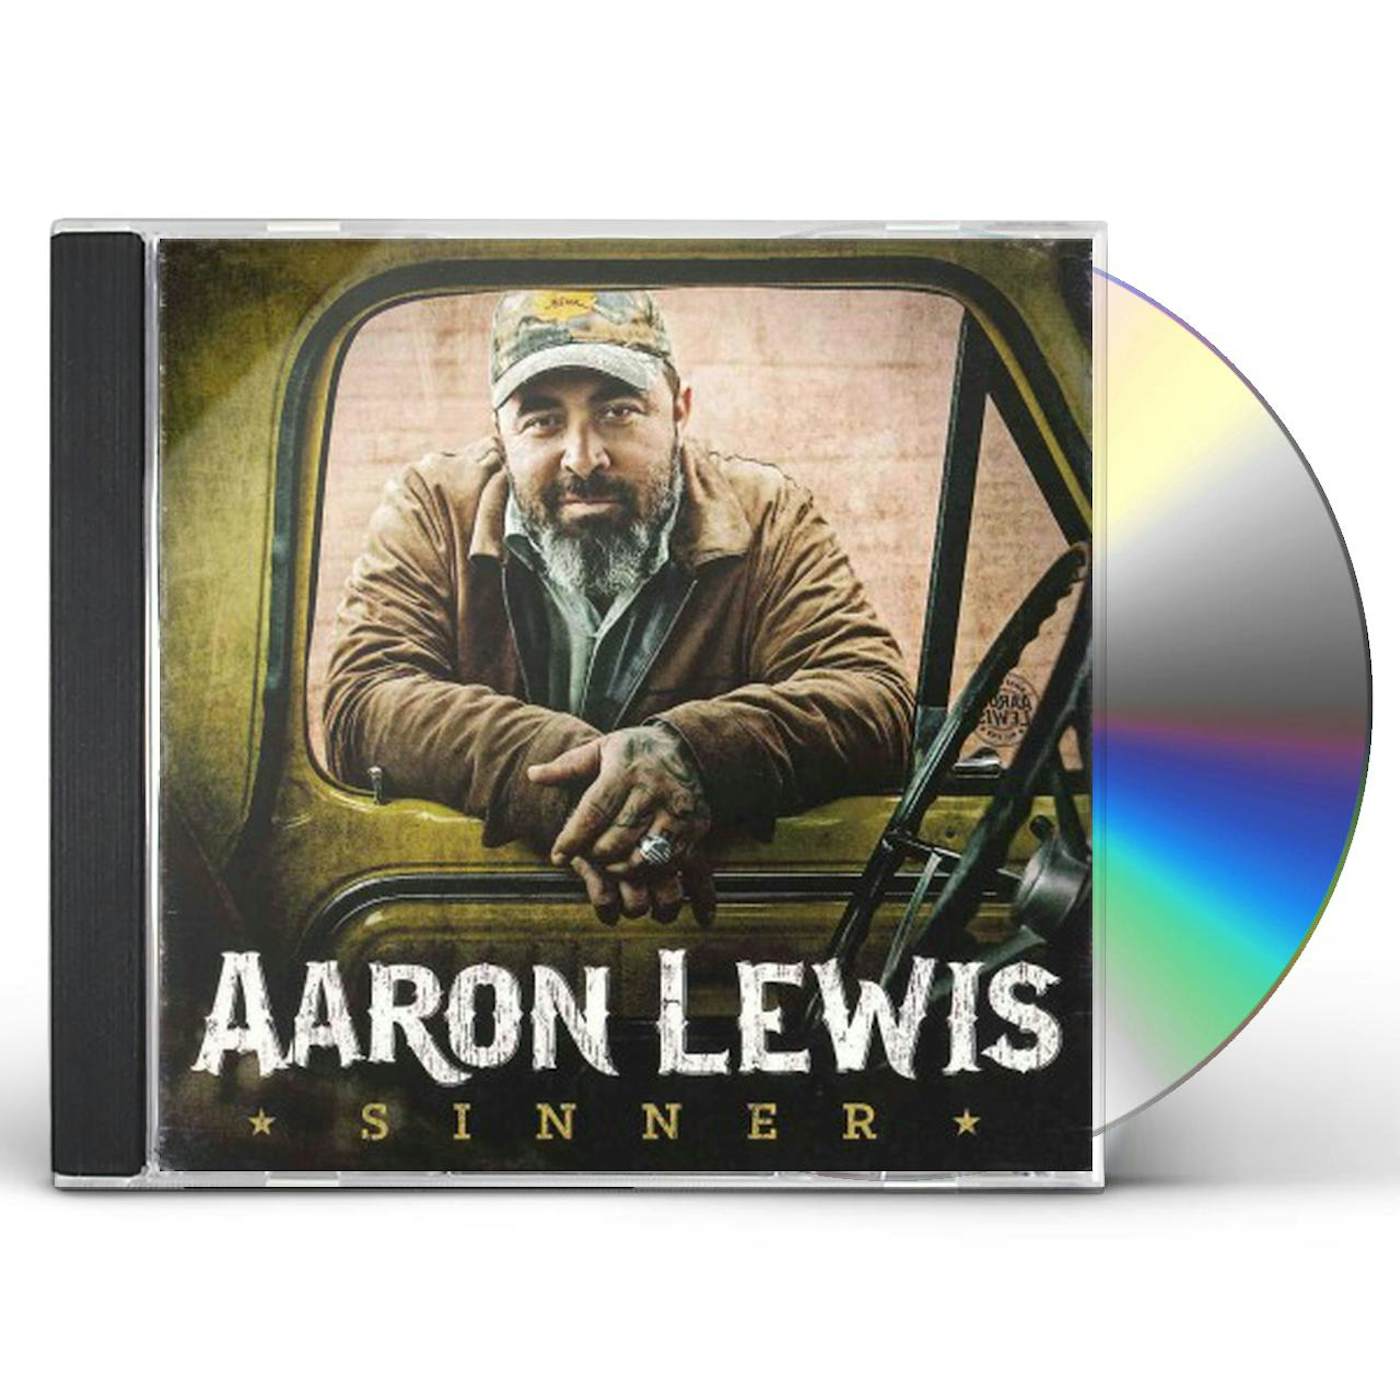 Aaron Lewis SINNER CD